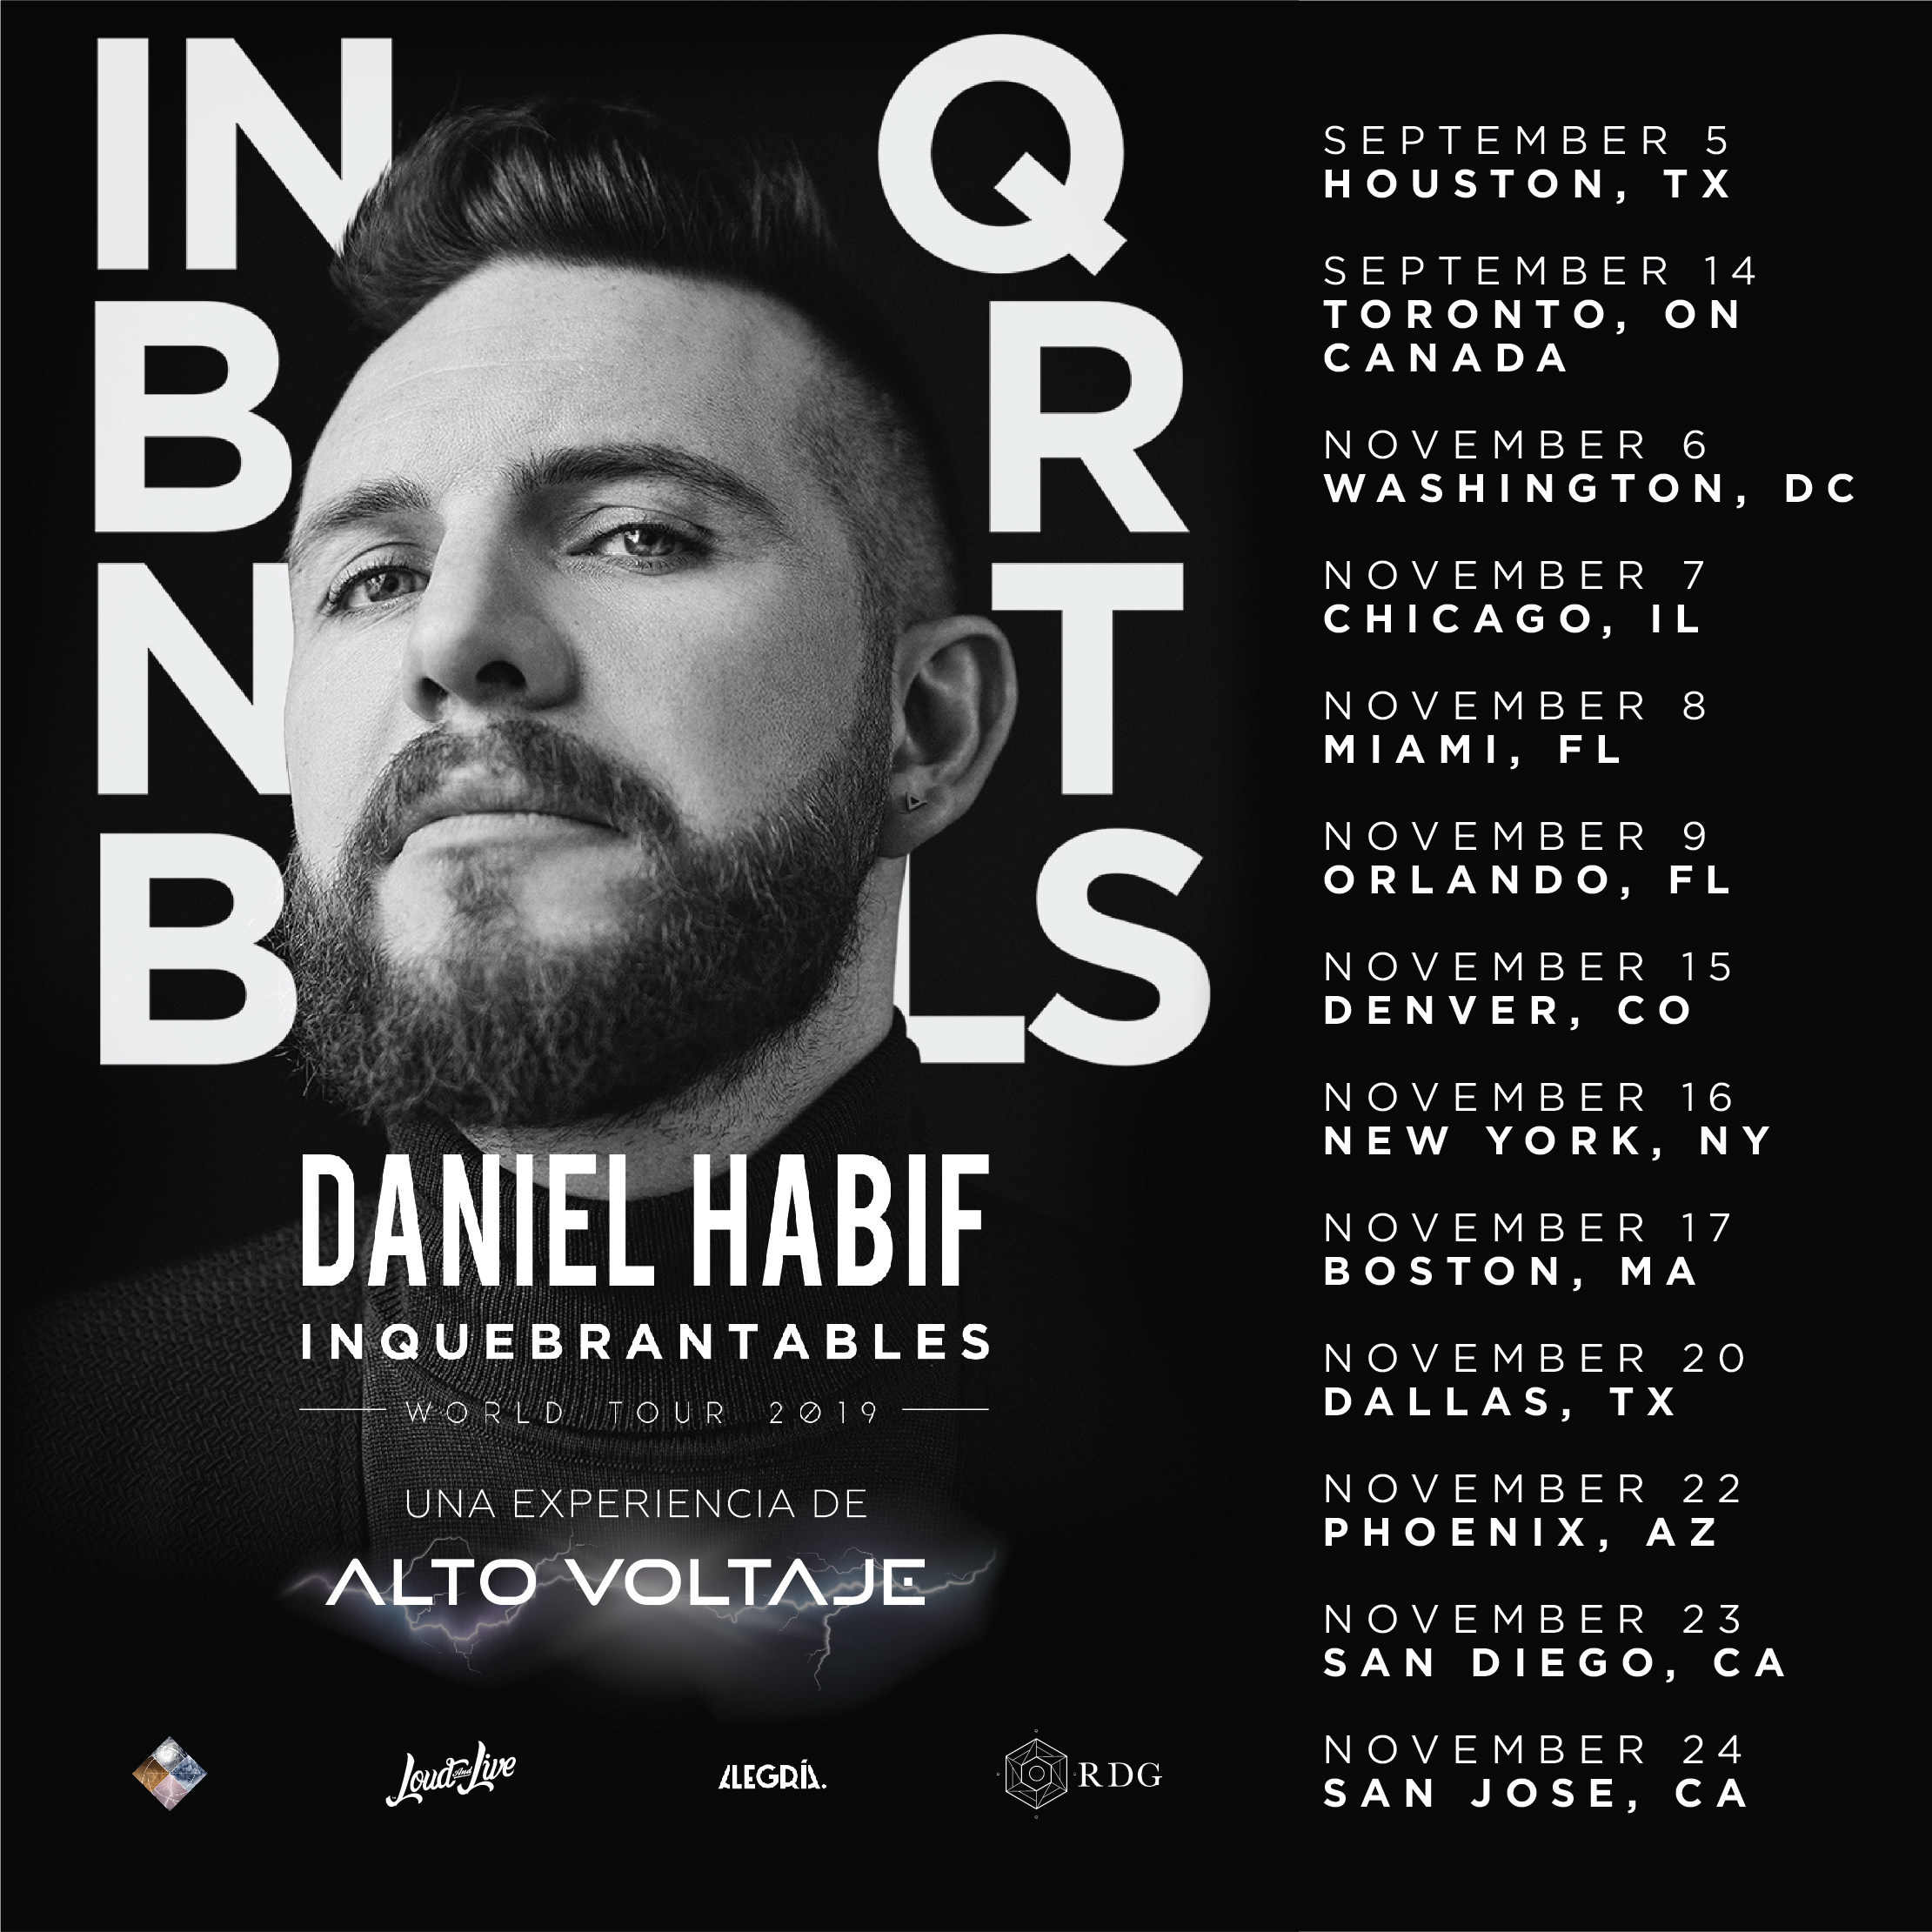 Daniel Habif confirma tour en los Estados Unidos Hispanic PR Wire